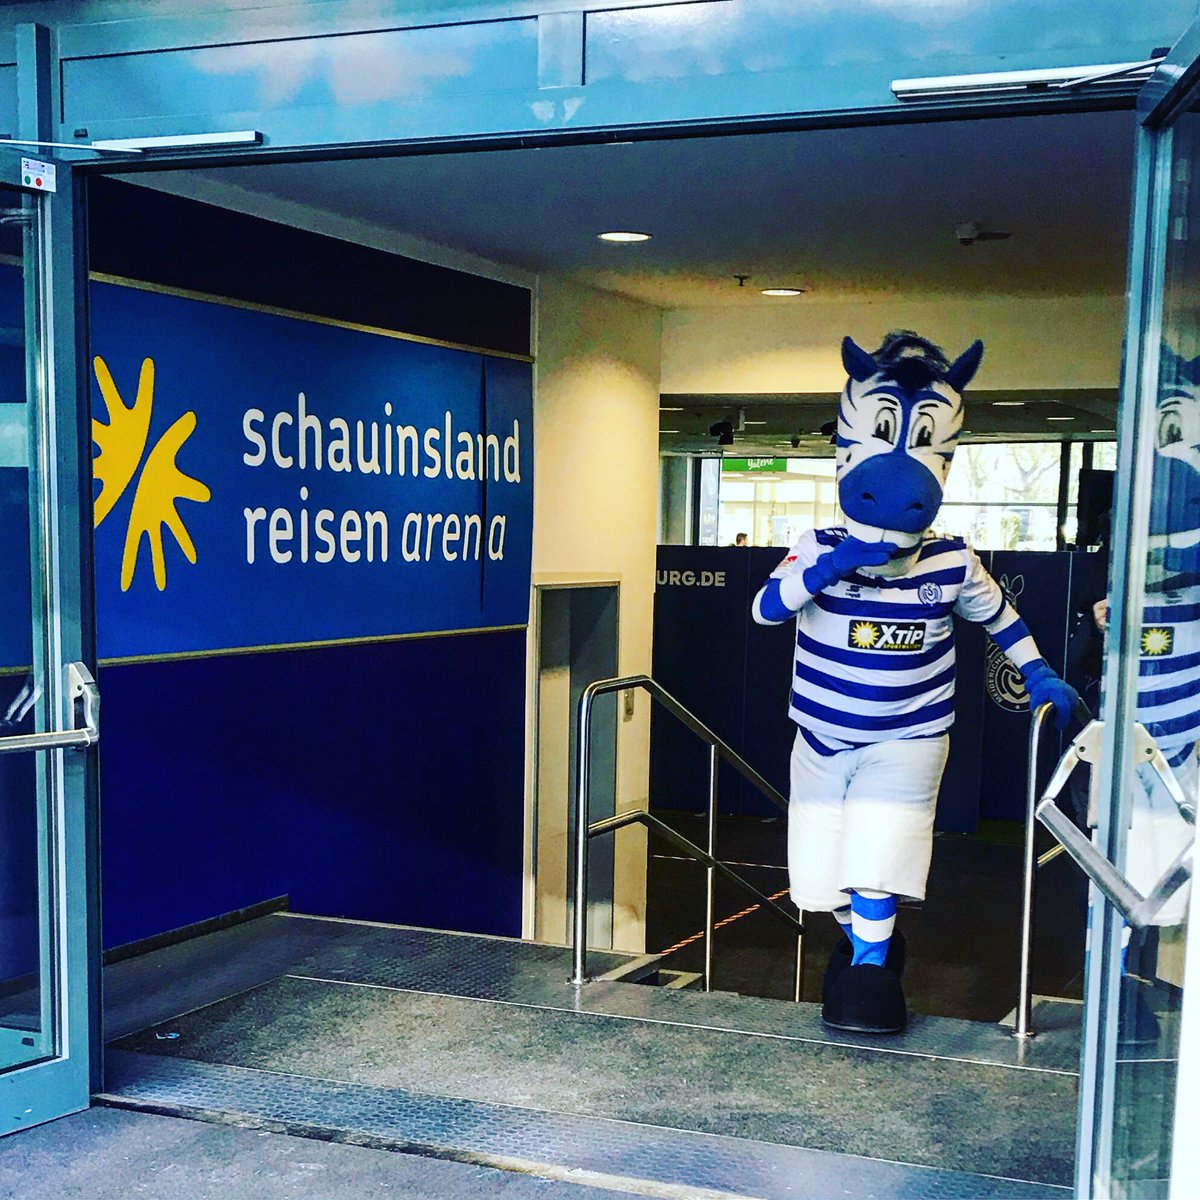 Viele Grüße von Ennatz aus Duisburg..🍀👍🏻⚽️ 🦓

Weitere Fotos 👉 instagram.com/henning_loves_…

#henninglovesfootball #bundesliga2 #msvduisburg #unionberlin #zebras #eisernunion #schauinslandreisenarena #statistik